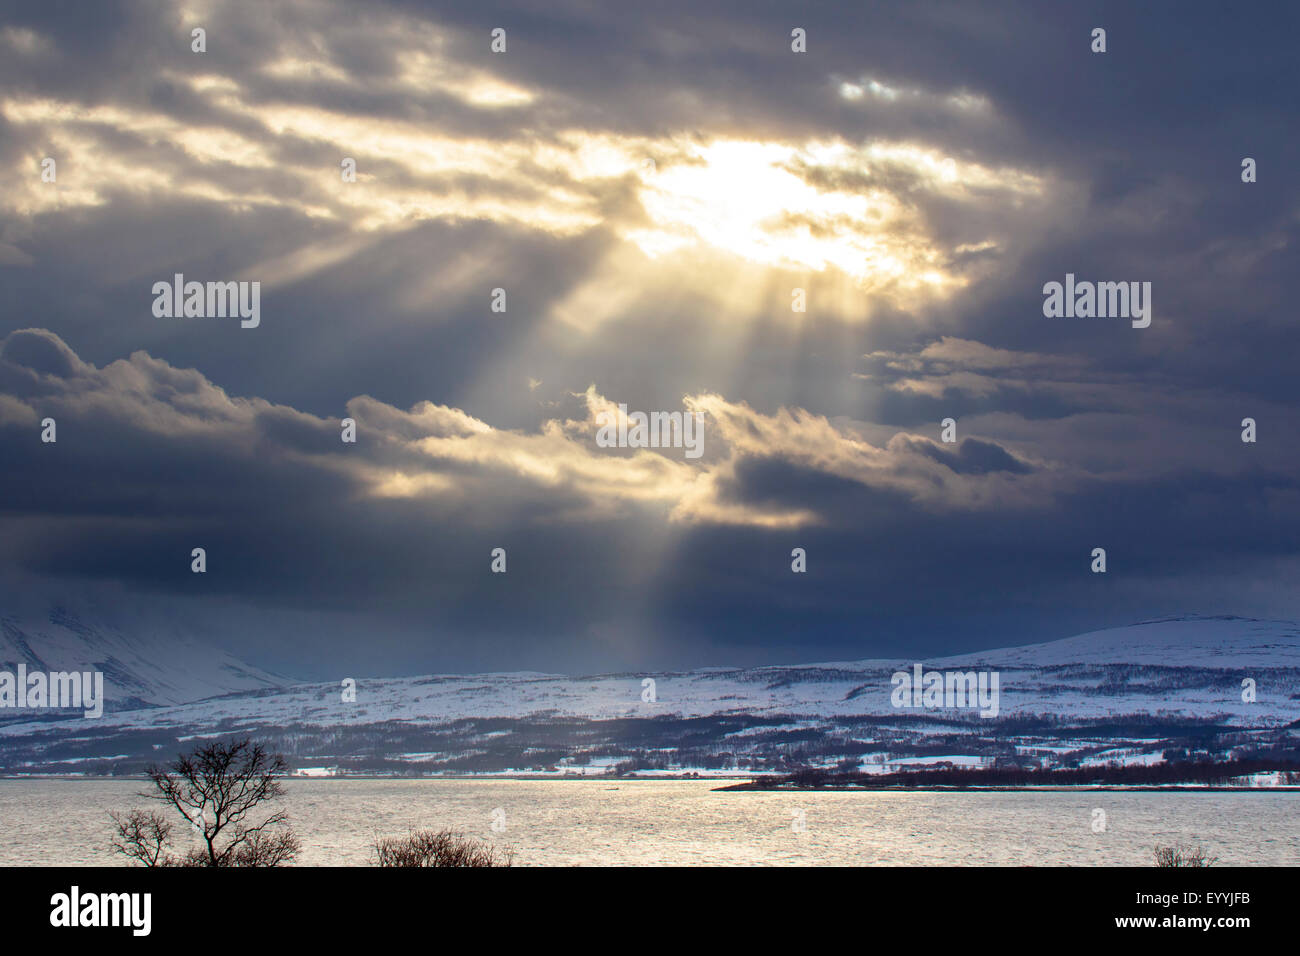 Sunray dal foro in nuvole, Norvegia, Troms, Kvaloeya, Tromsoe Foto Stock